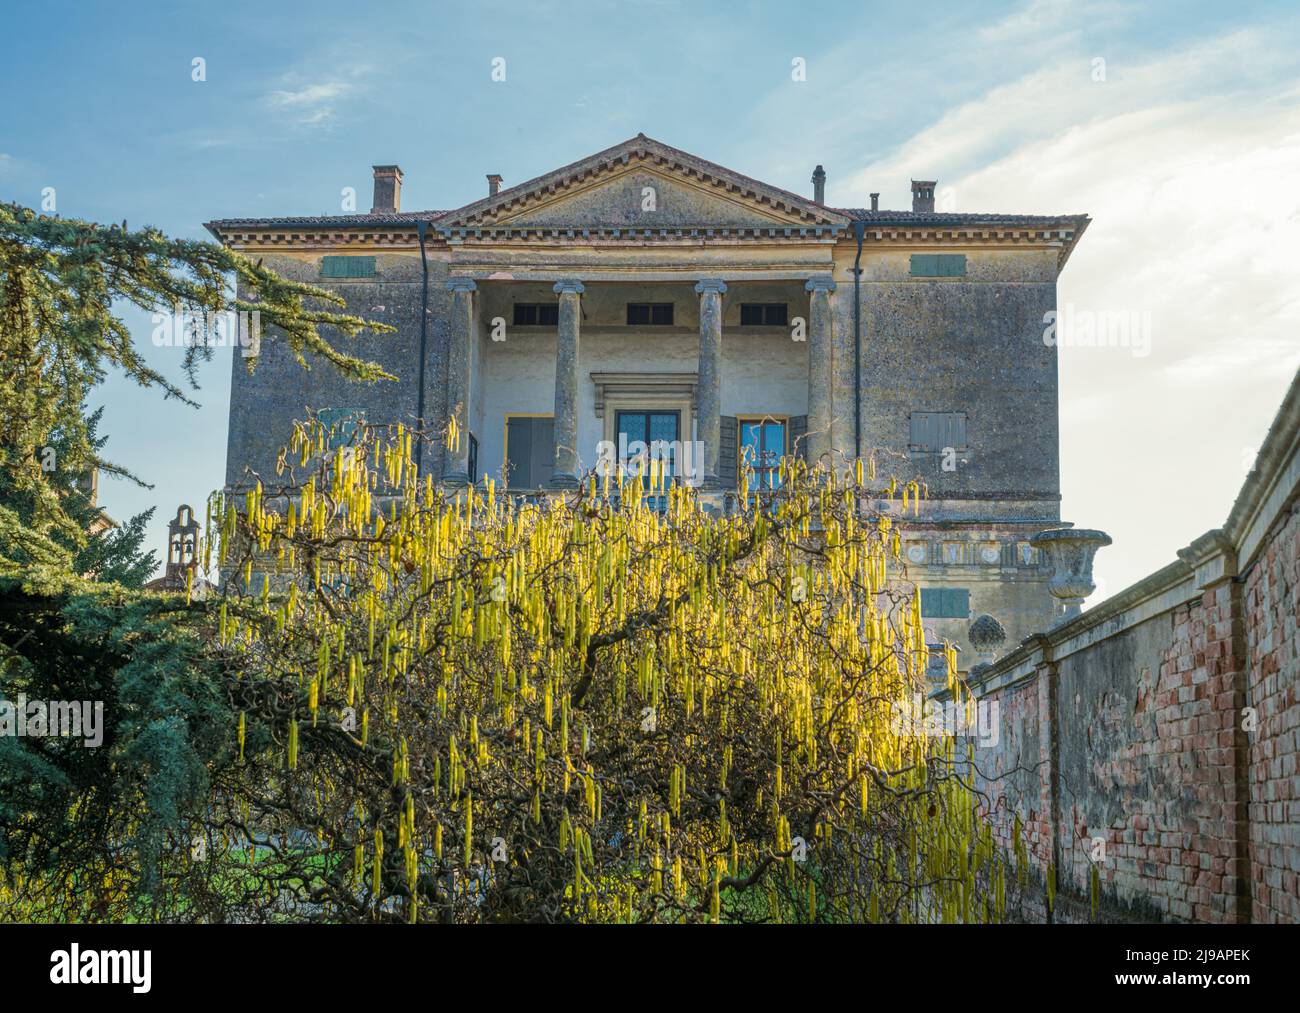 Montagnana, Italia - 4 de marzo de 2022: La fachada trasera de la villa Pisani vista desde su jardín Foto de stock